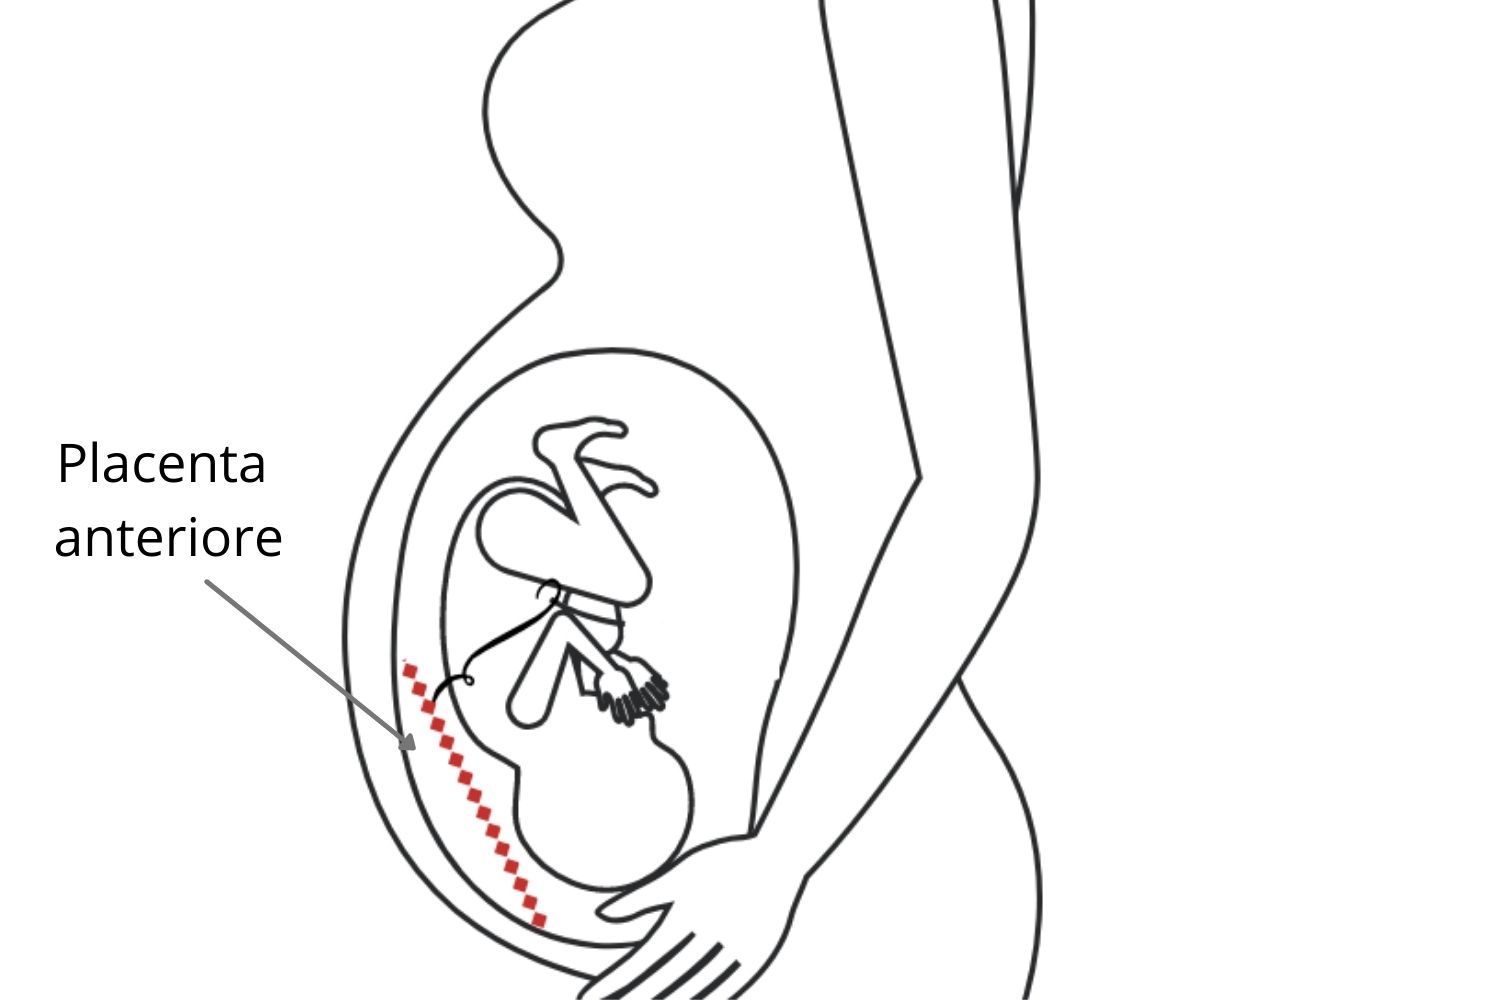 Placenta anteriore: caratteristiche e possibili complicazioni